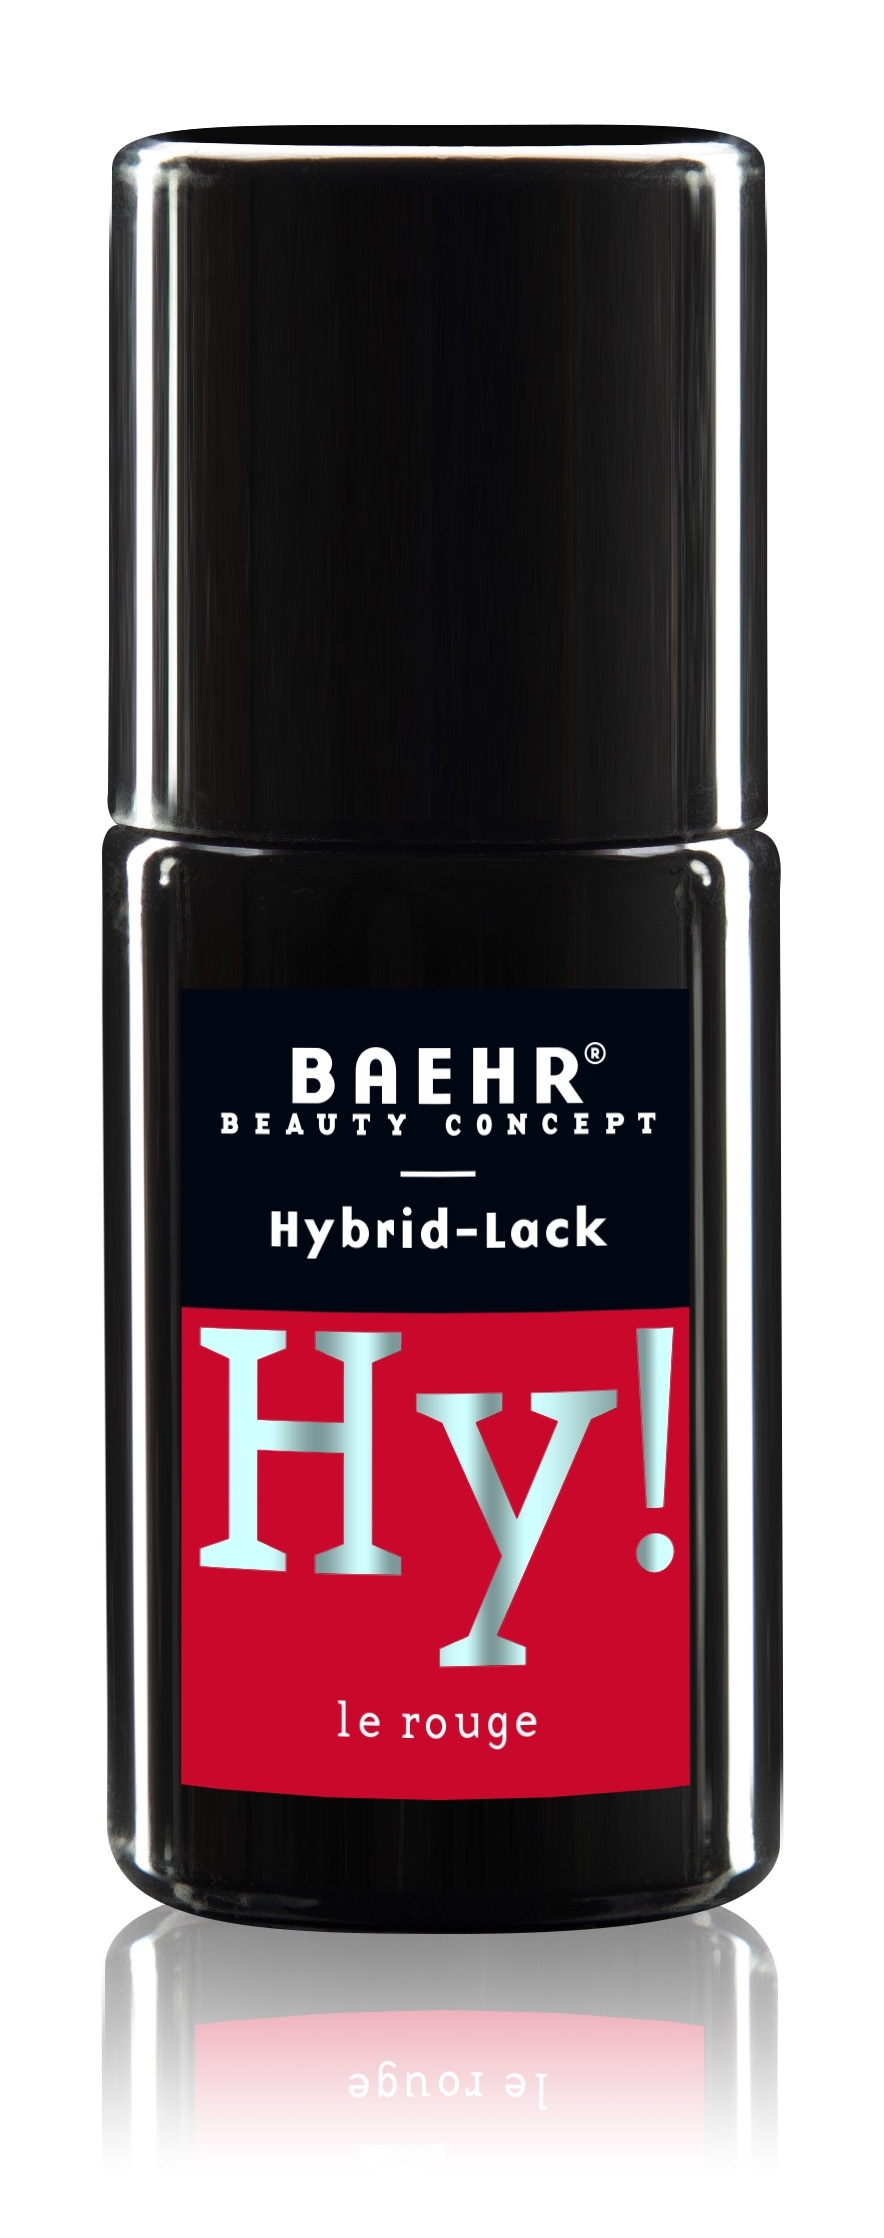 BAEHR BEAUTY CONCEPT - NAILS Hy! Hybrid-Lack, le rouge 8 ml